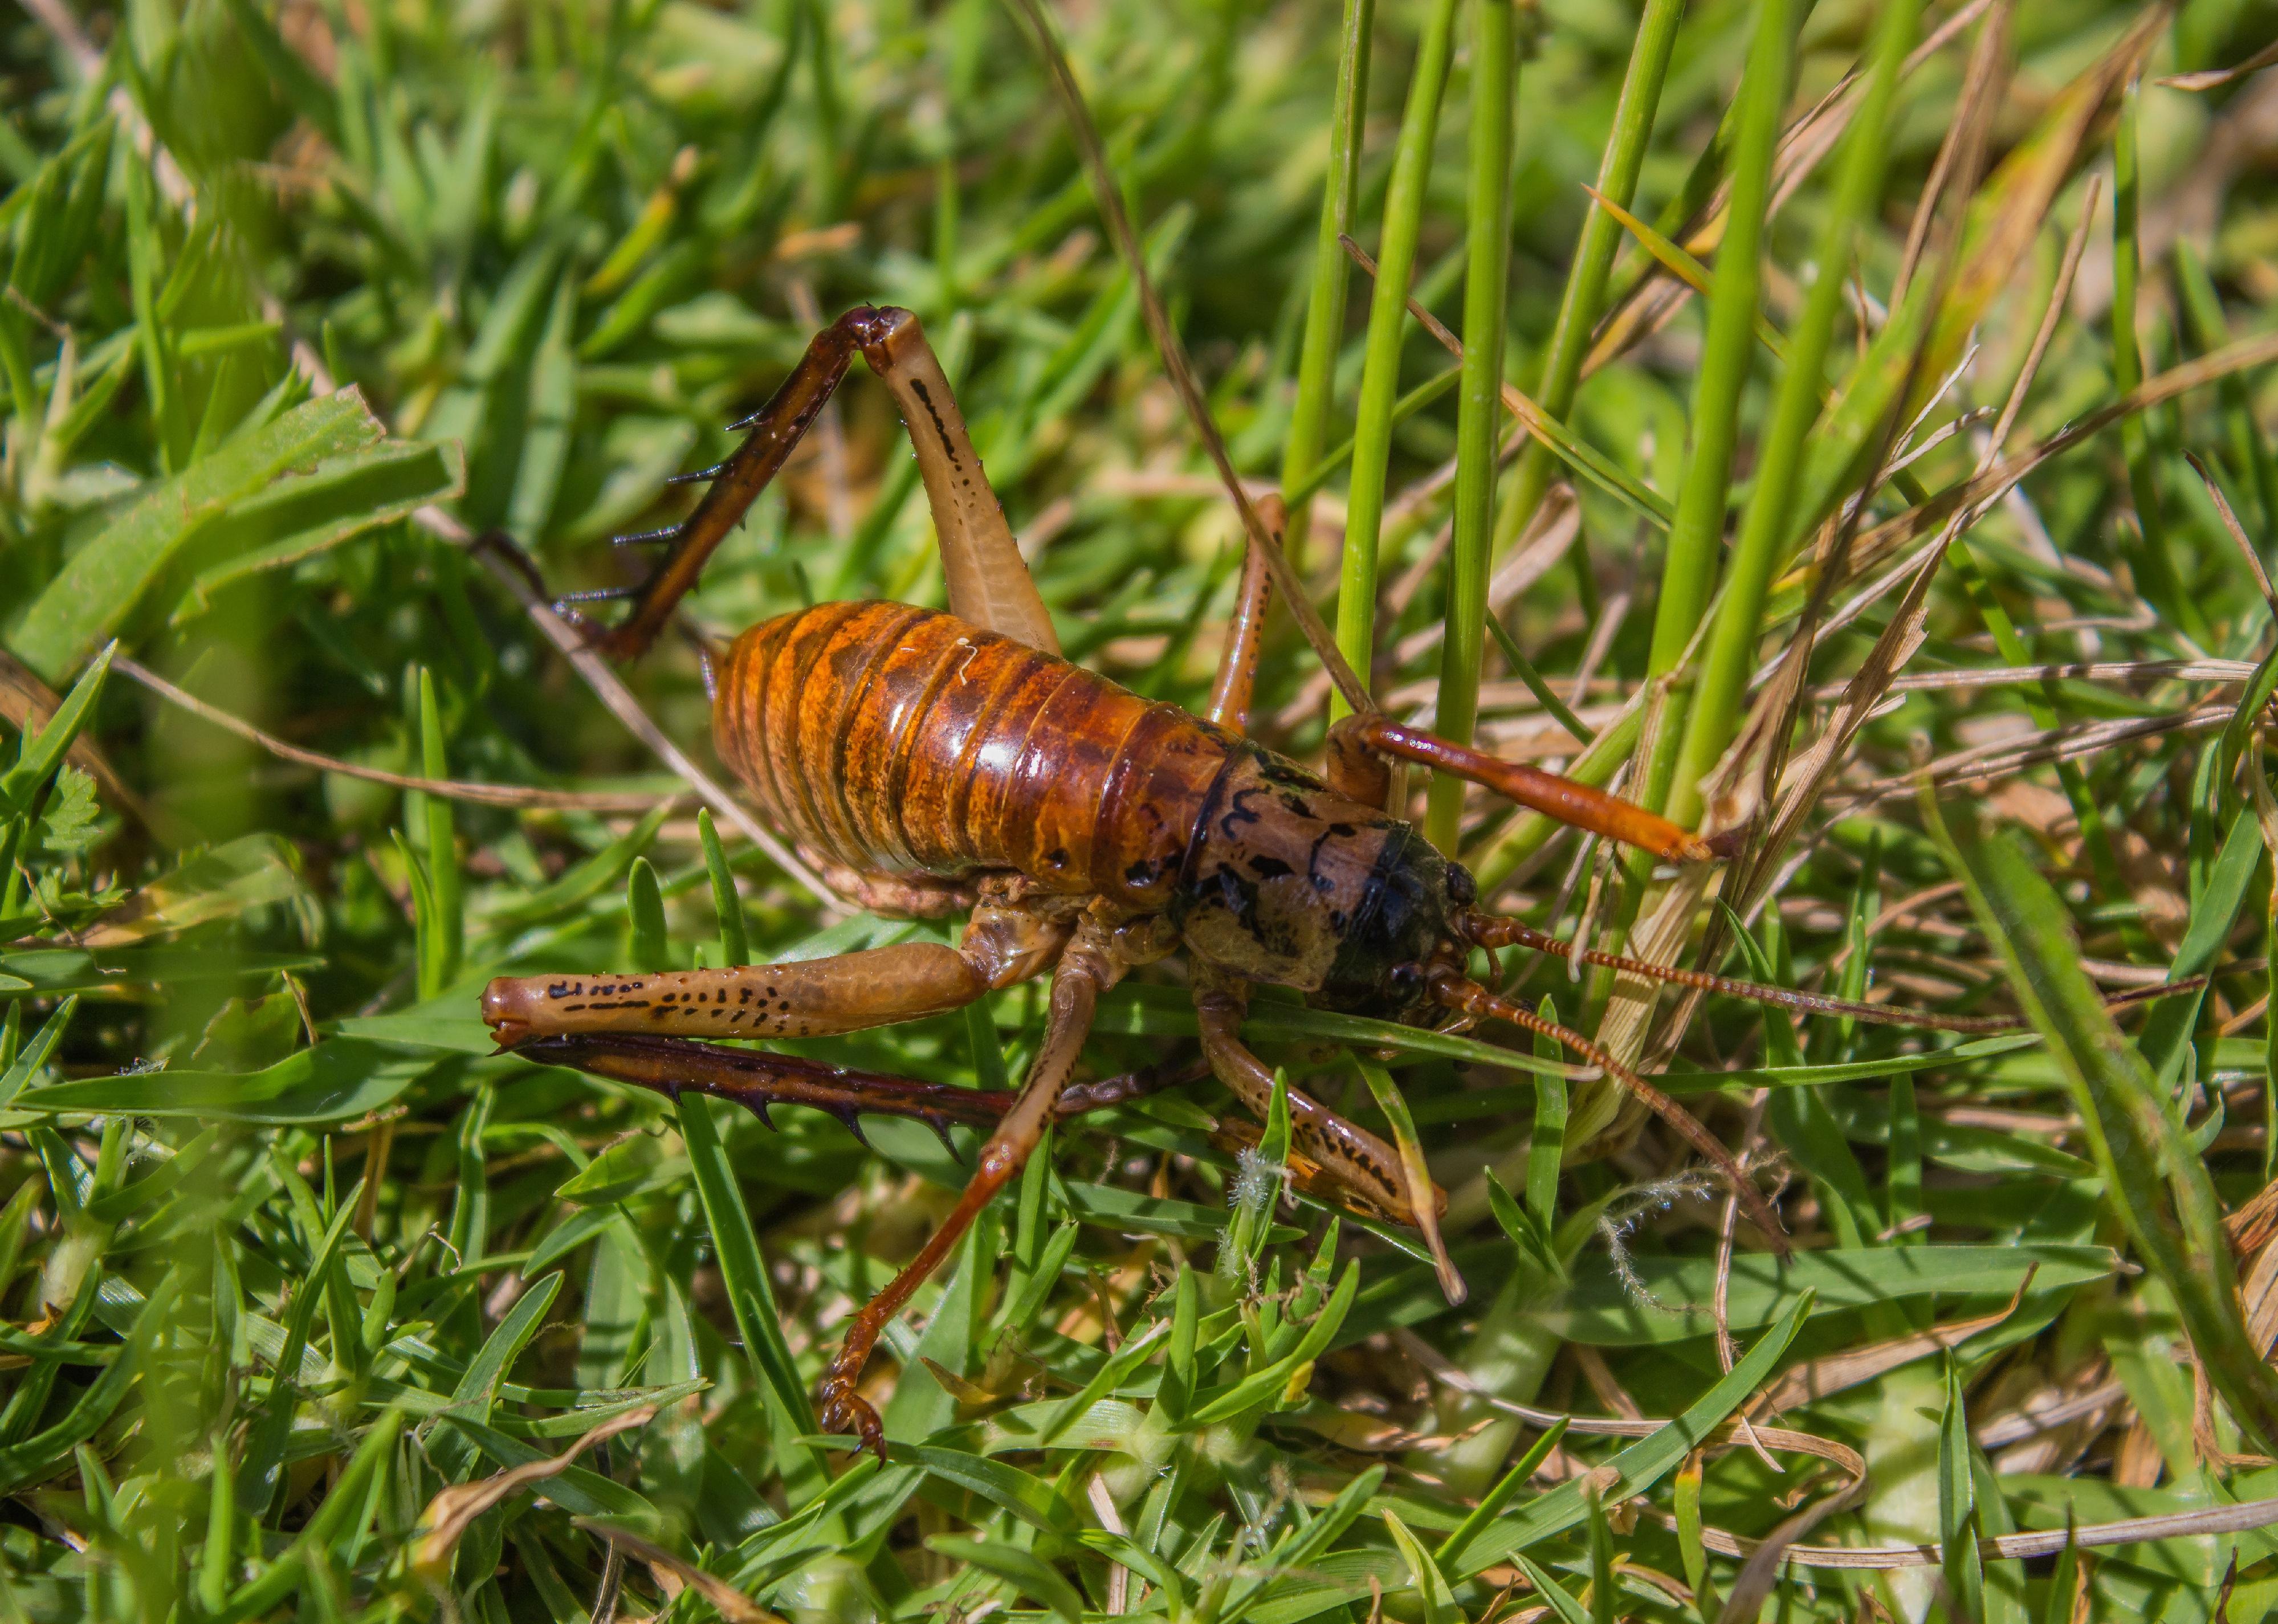 Giant grasshopper on grass.